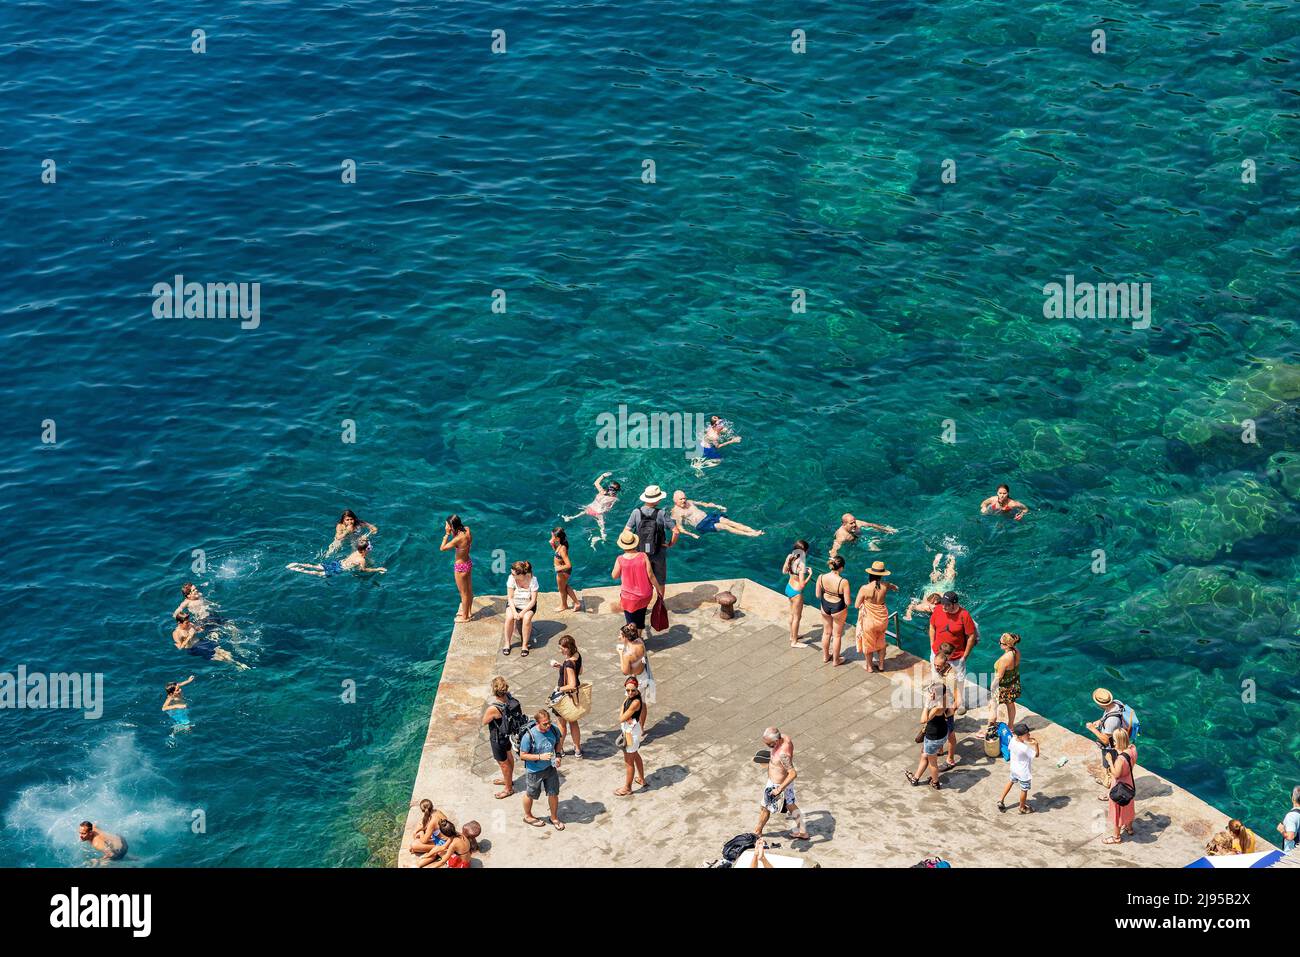 Group of people swim and sunbathe in the sea of the small village of Vernazza, Cinque Terre, UNESCO world heritage site. La Spezia, Liguria, Italy. Stock Photo